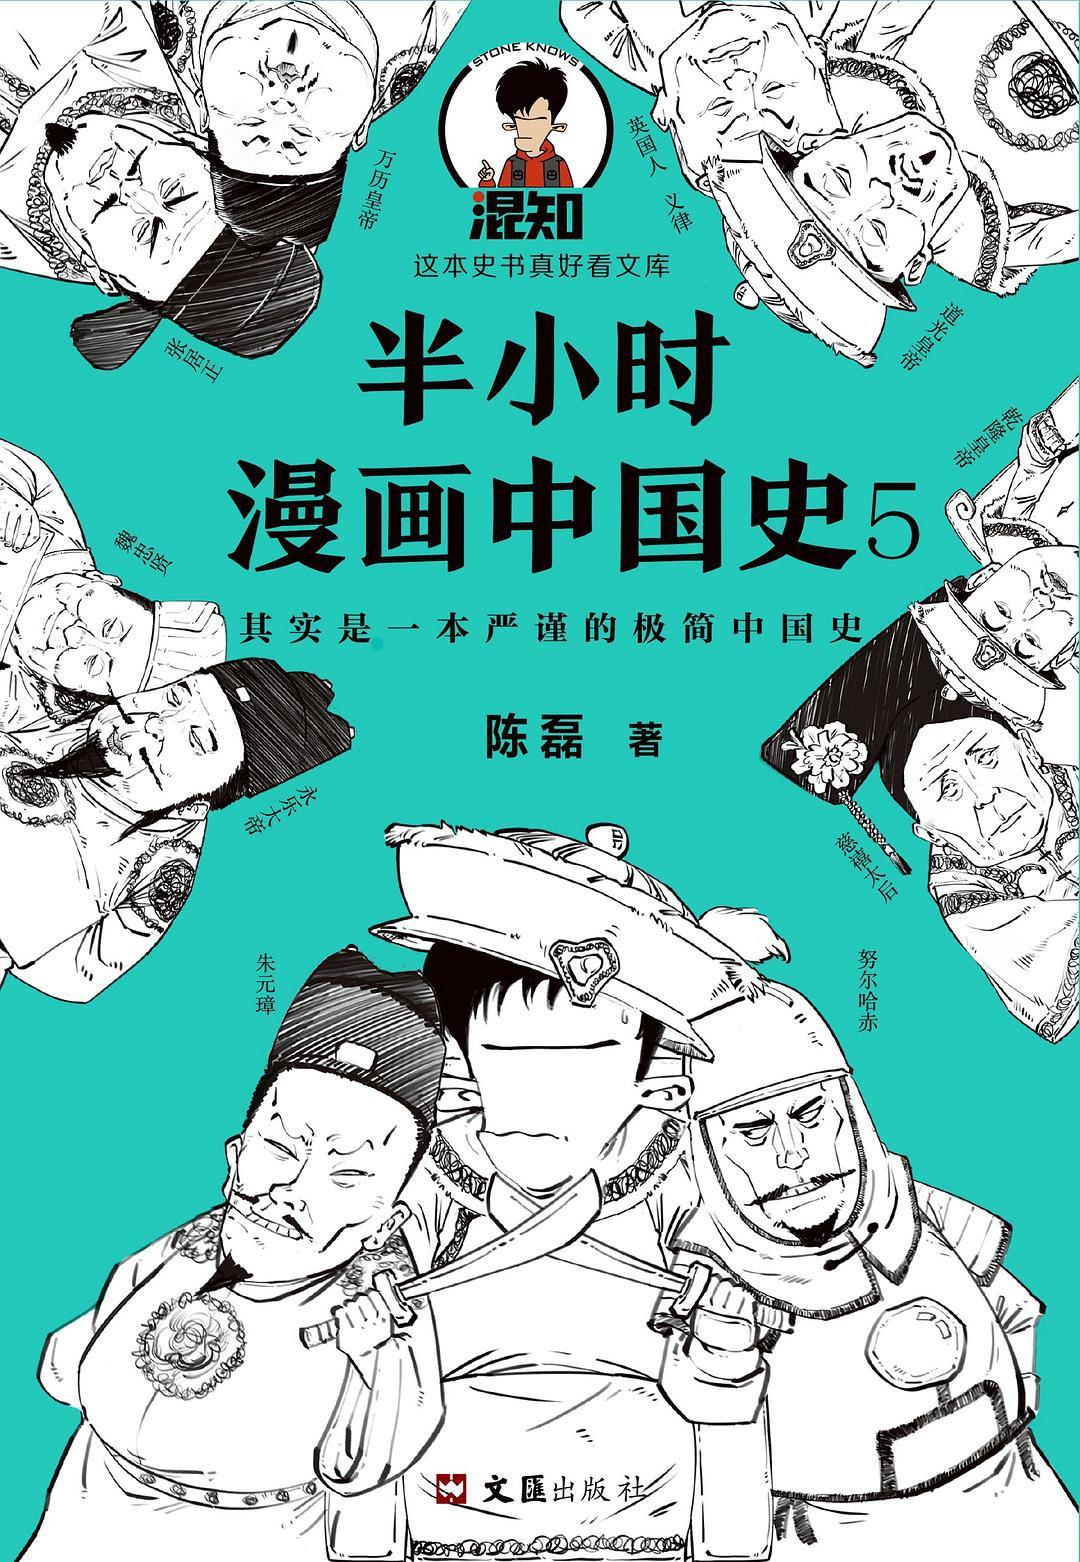 半小时漫画中国史5 中国史大结局！笑着笑着，大清就亡了！其实是一本严谨的极简中国史